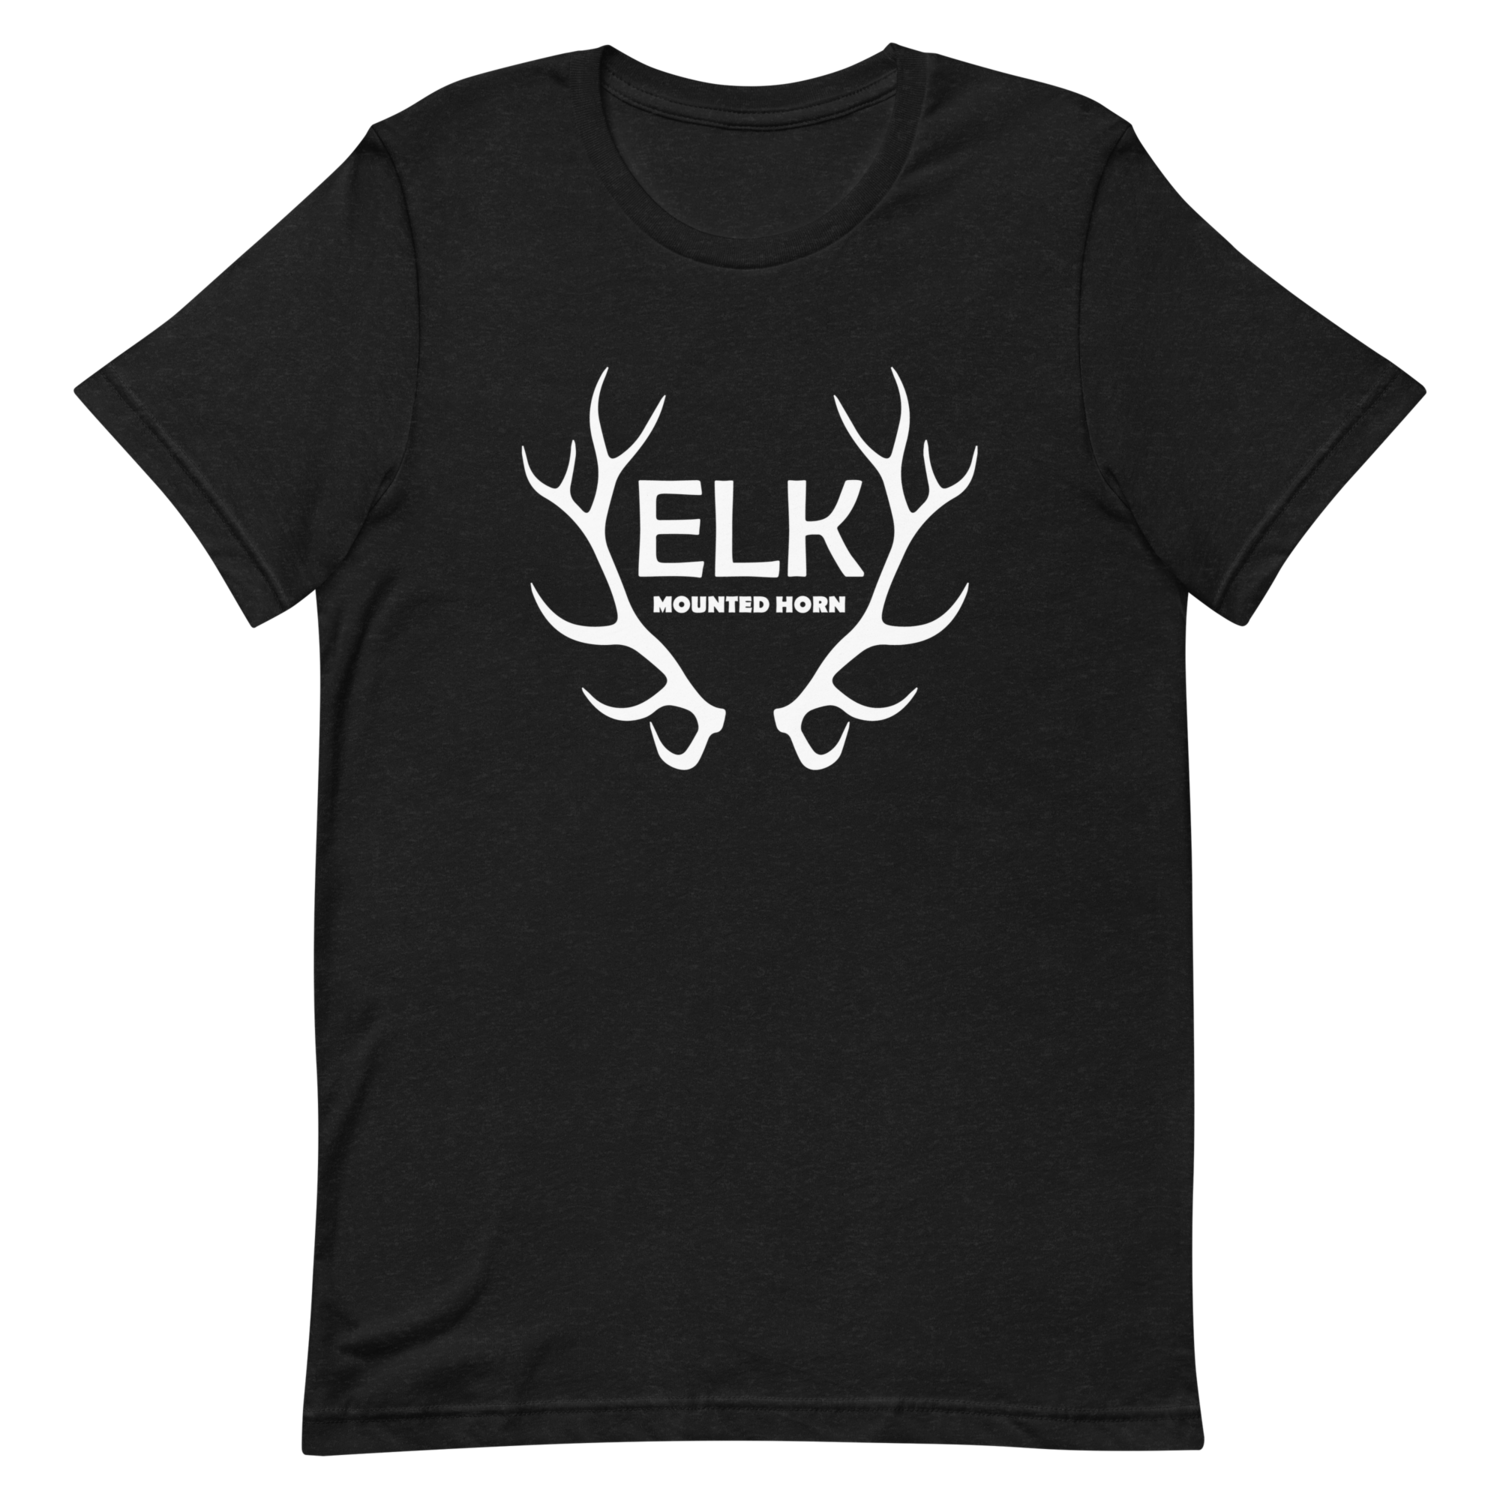 ELK t-shirt